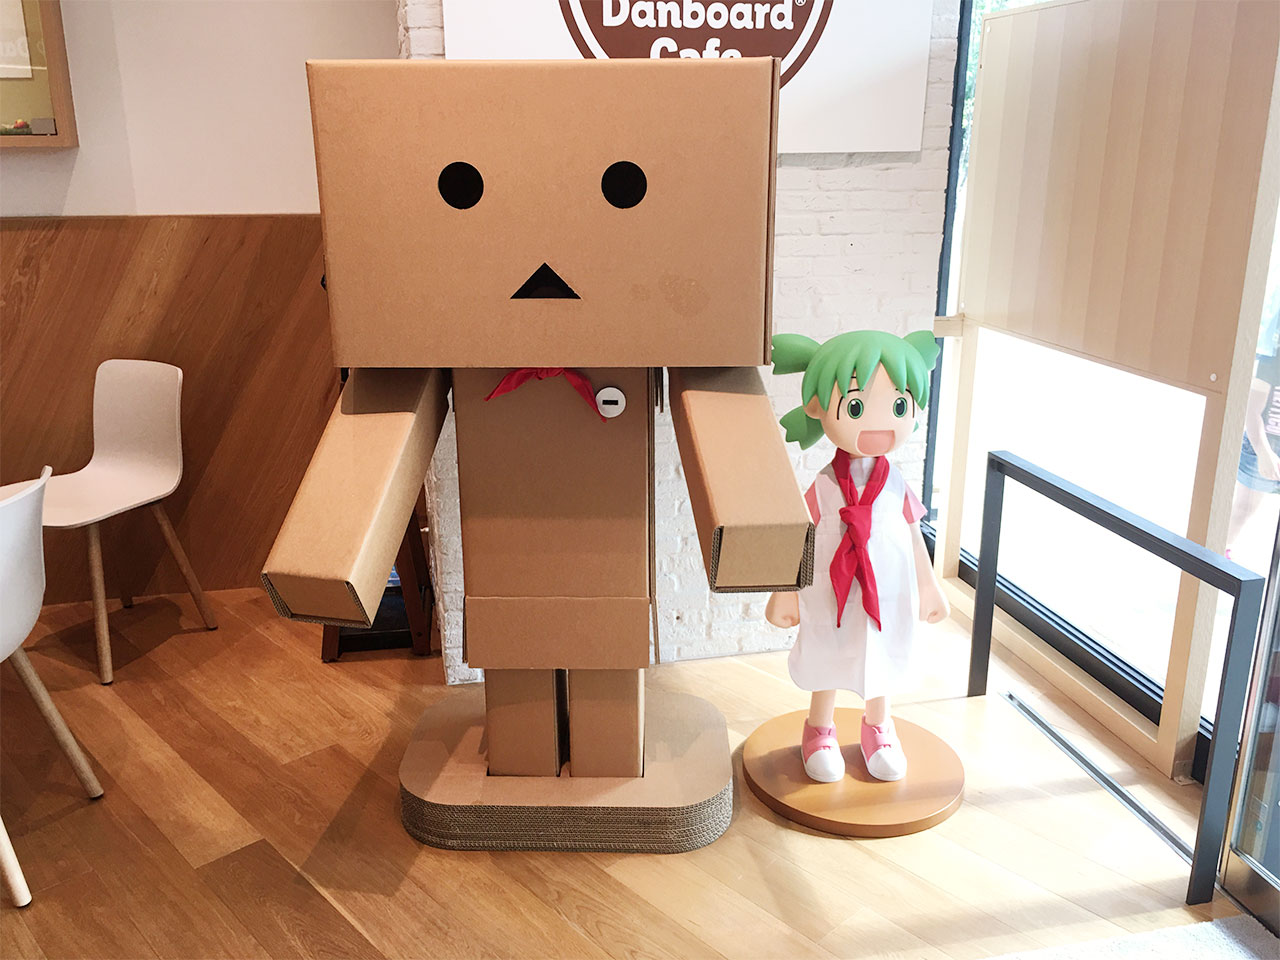 tachikawa-danboard-cafe-doll01